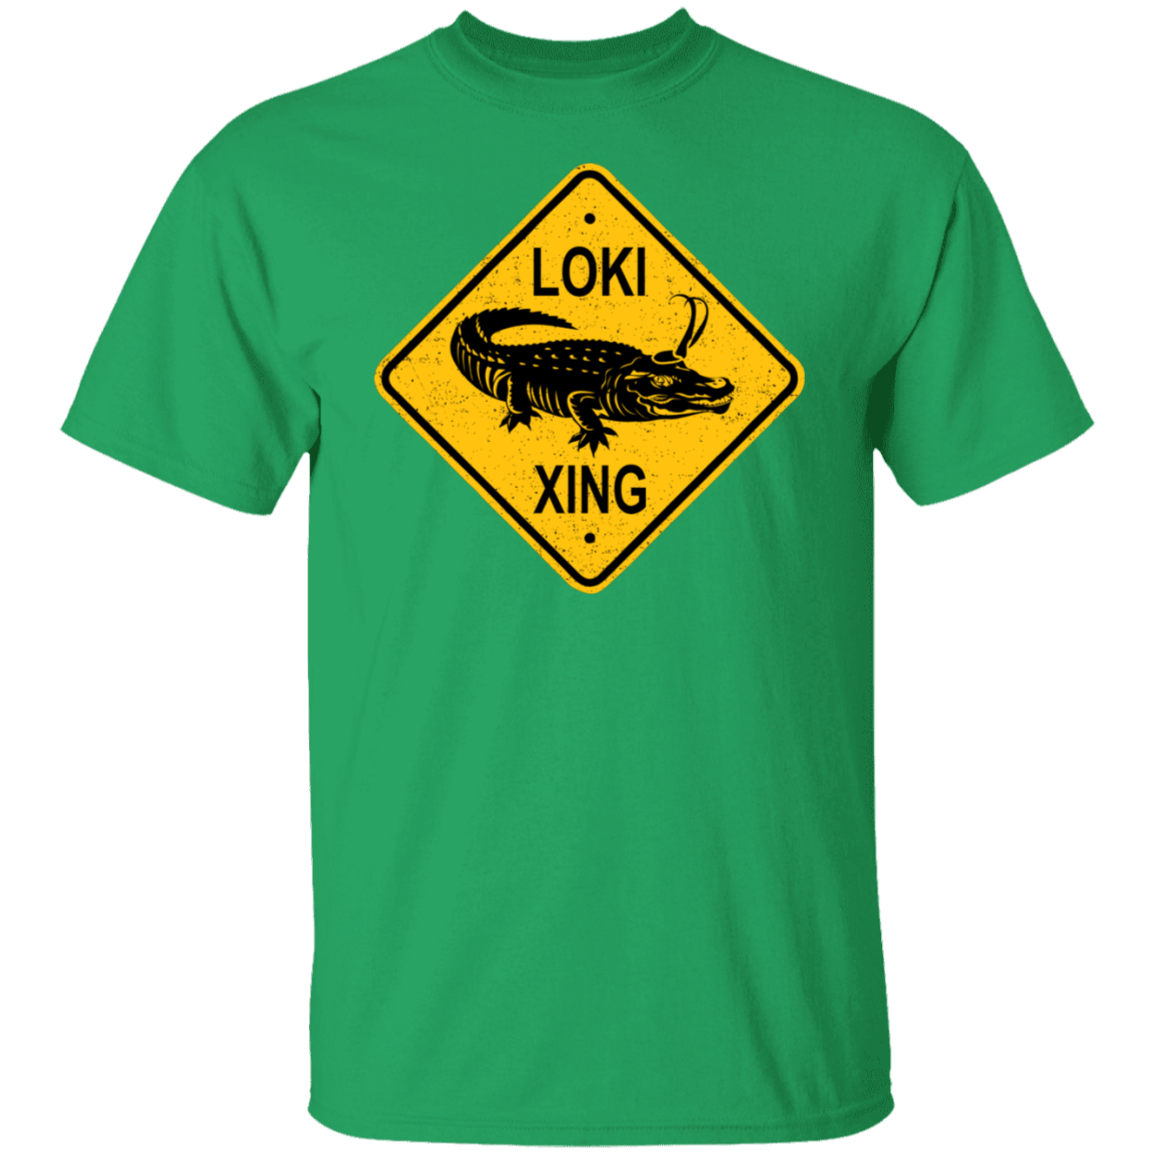 T-Shirts Irish Green / S Alligator Xing T-Shirt